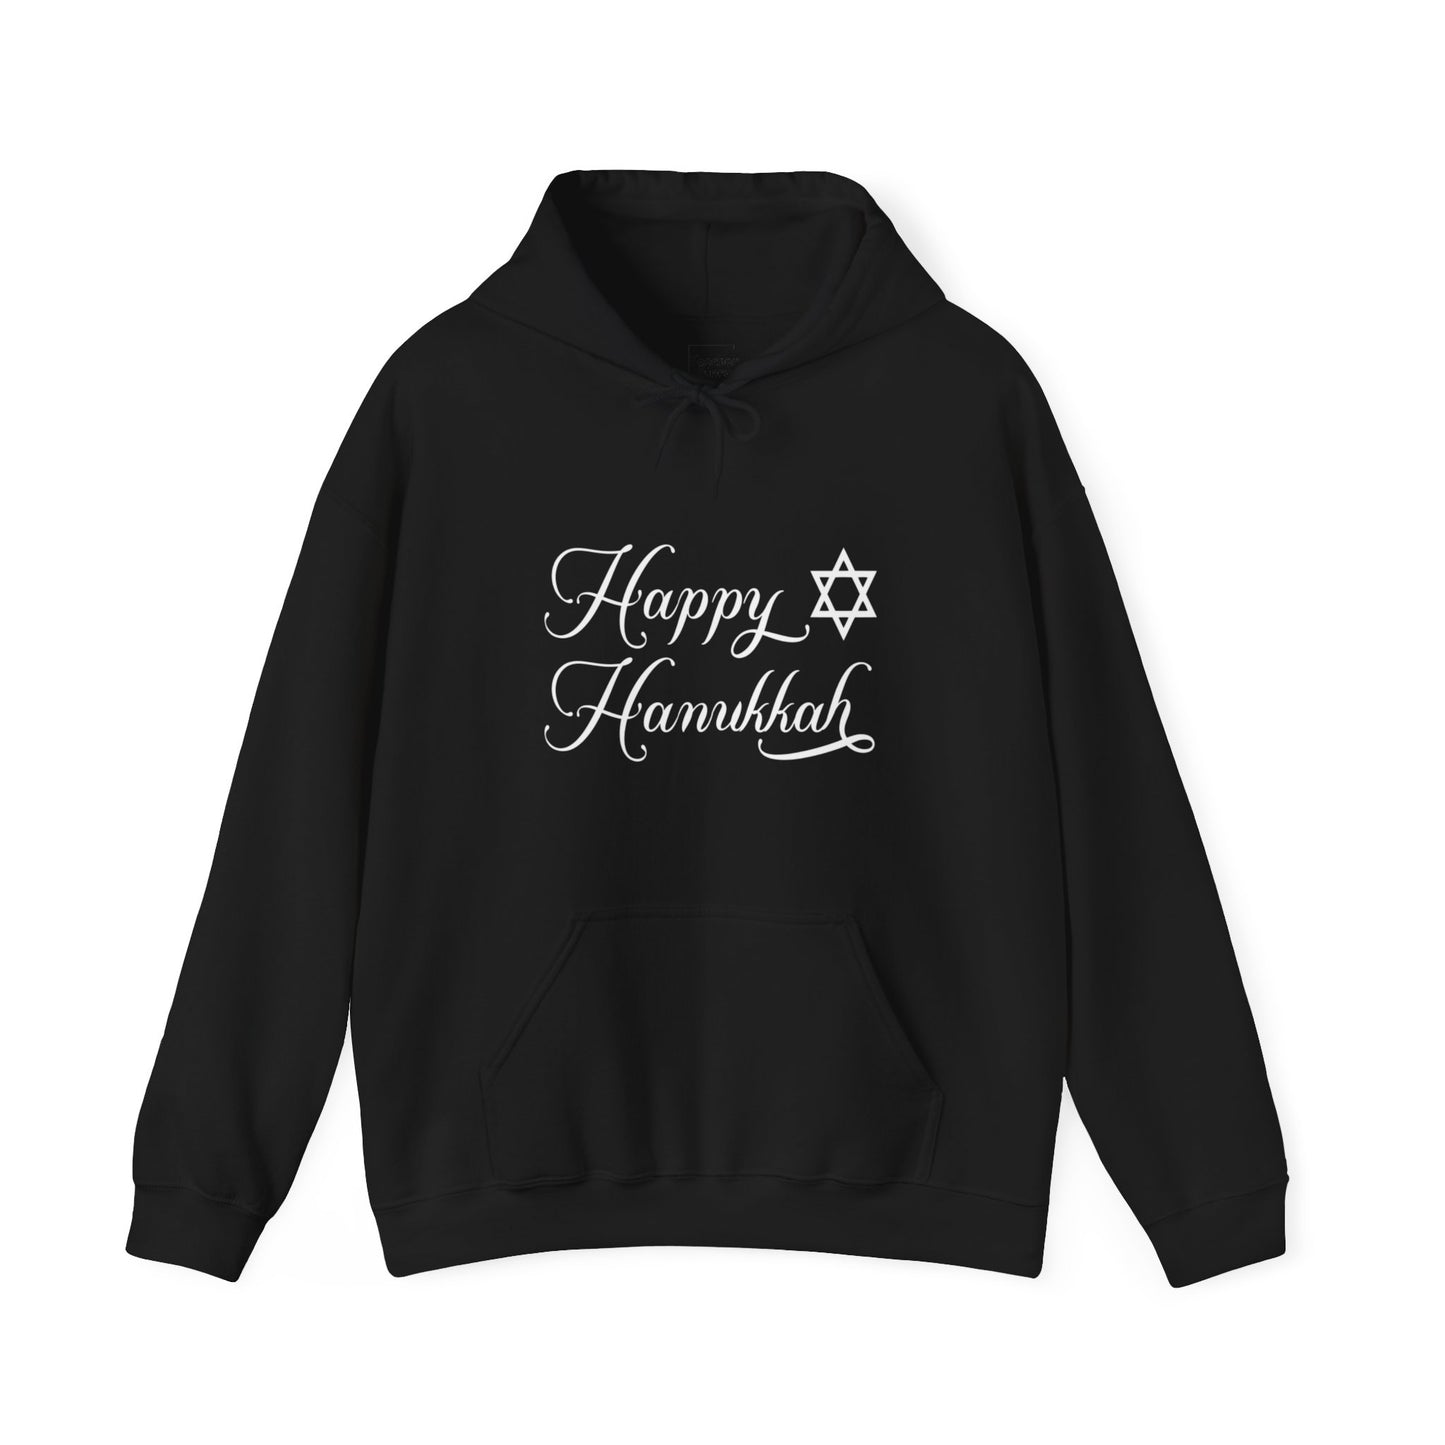 Happy Hanukkah Hooded Sweatshirt